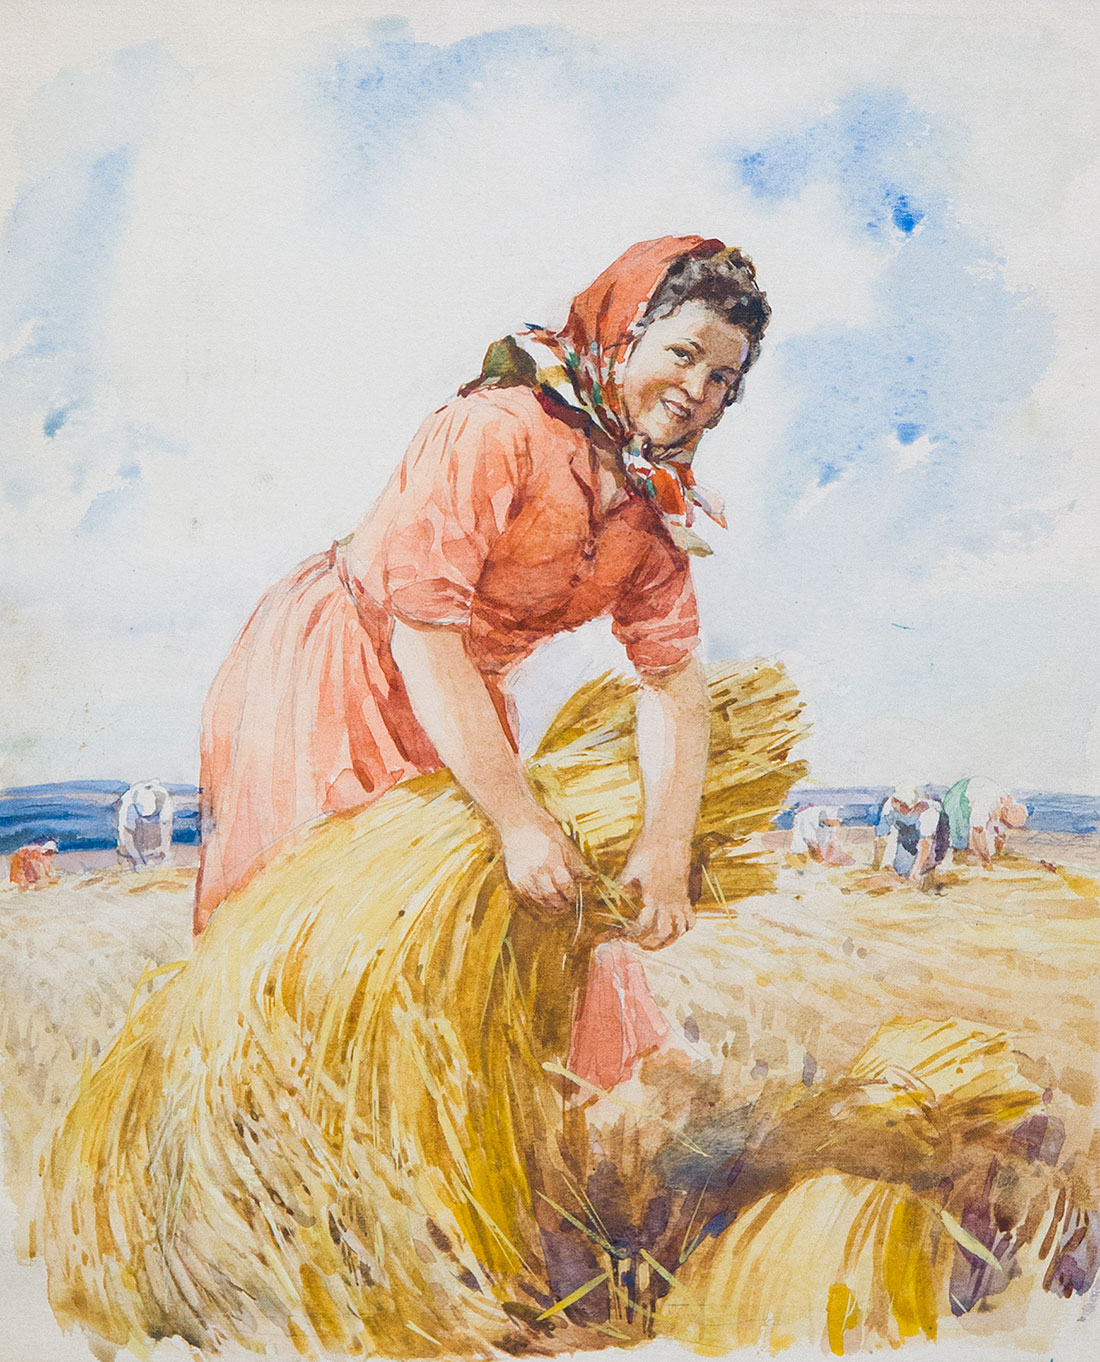 Harvest. Illustration for the magazine 